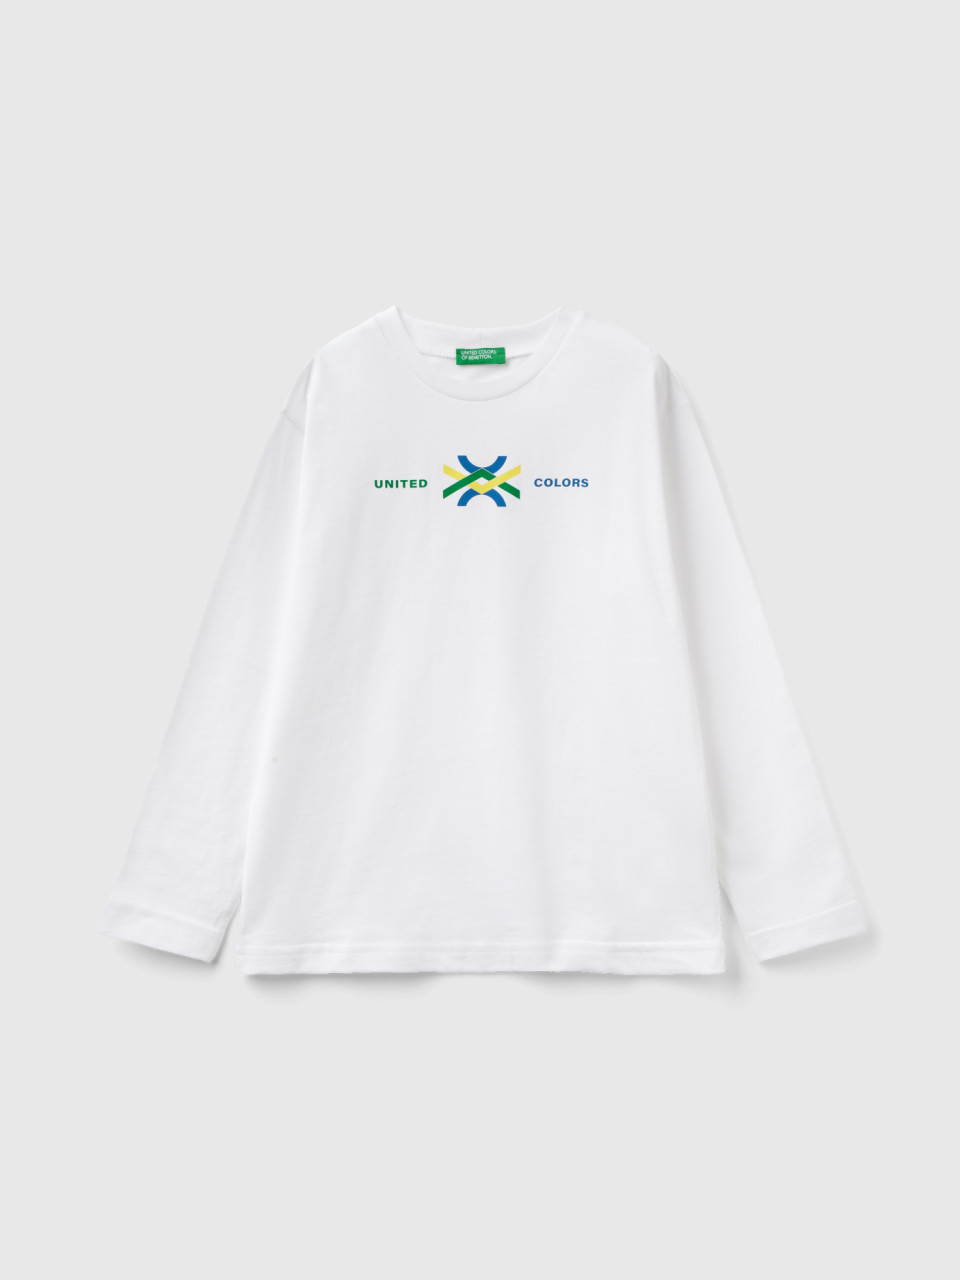 Benetton, T-shirt À Manches Longues En Coton Bio, Blanc, Enfants